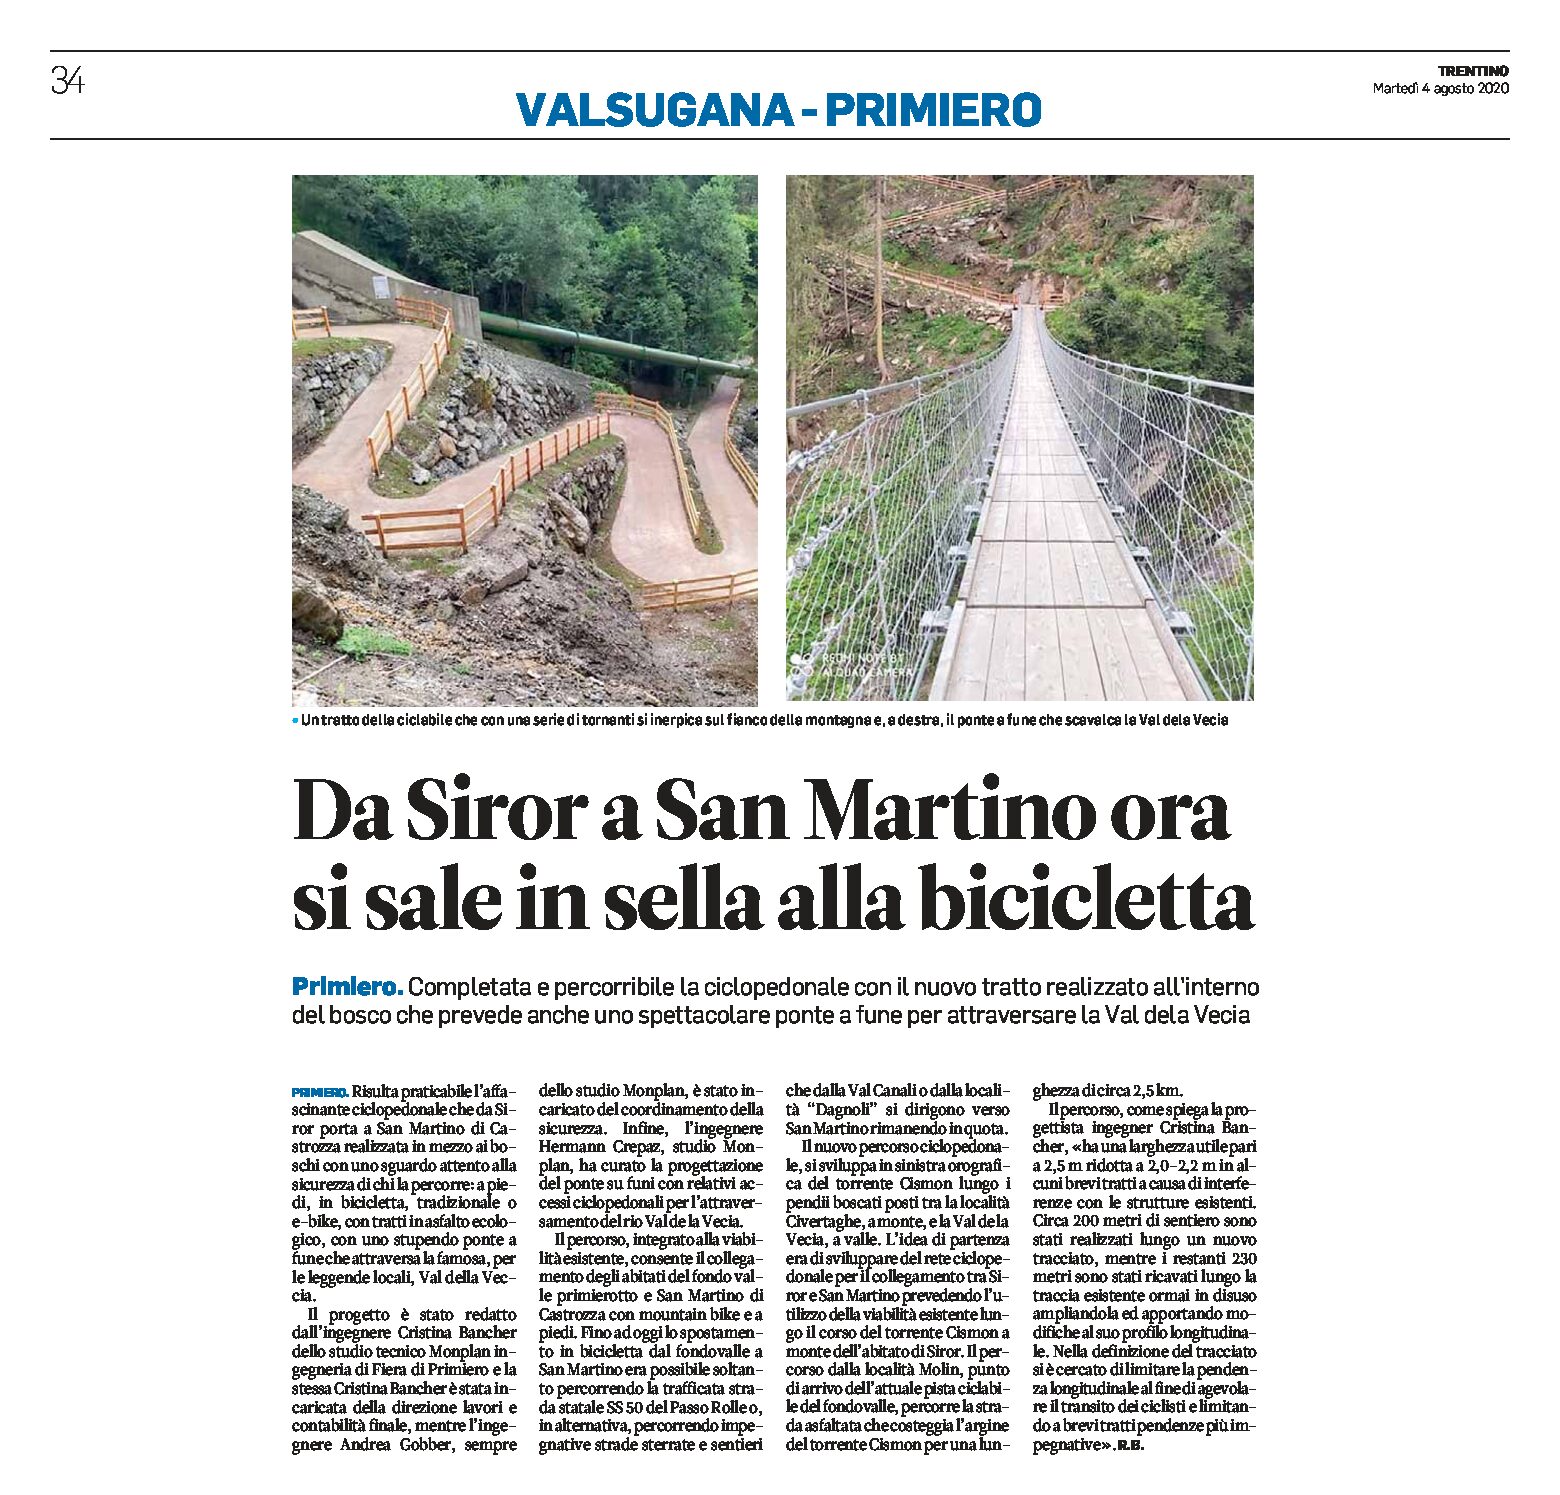 Nuova ciclopedonale: da Siror a San Martino si sale in bicicletta